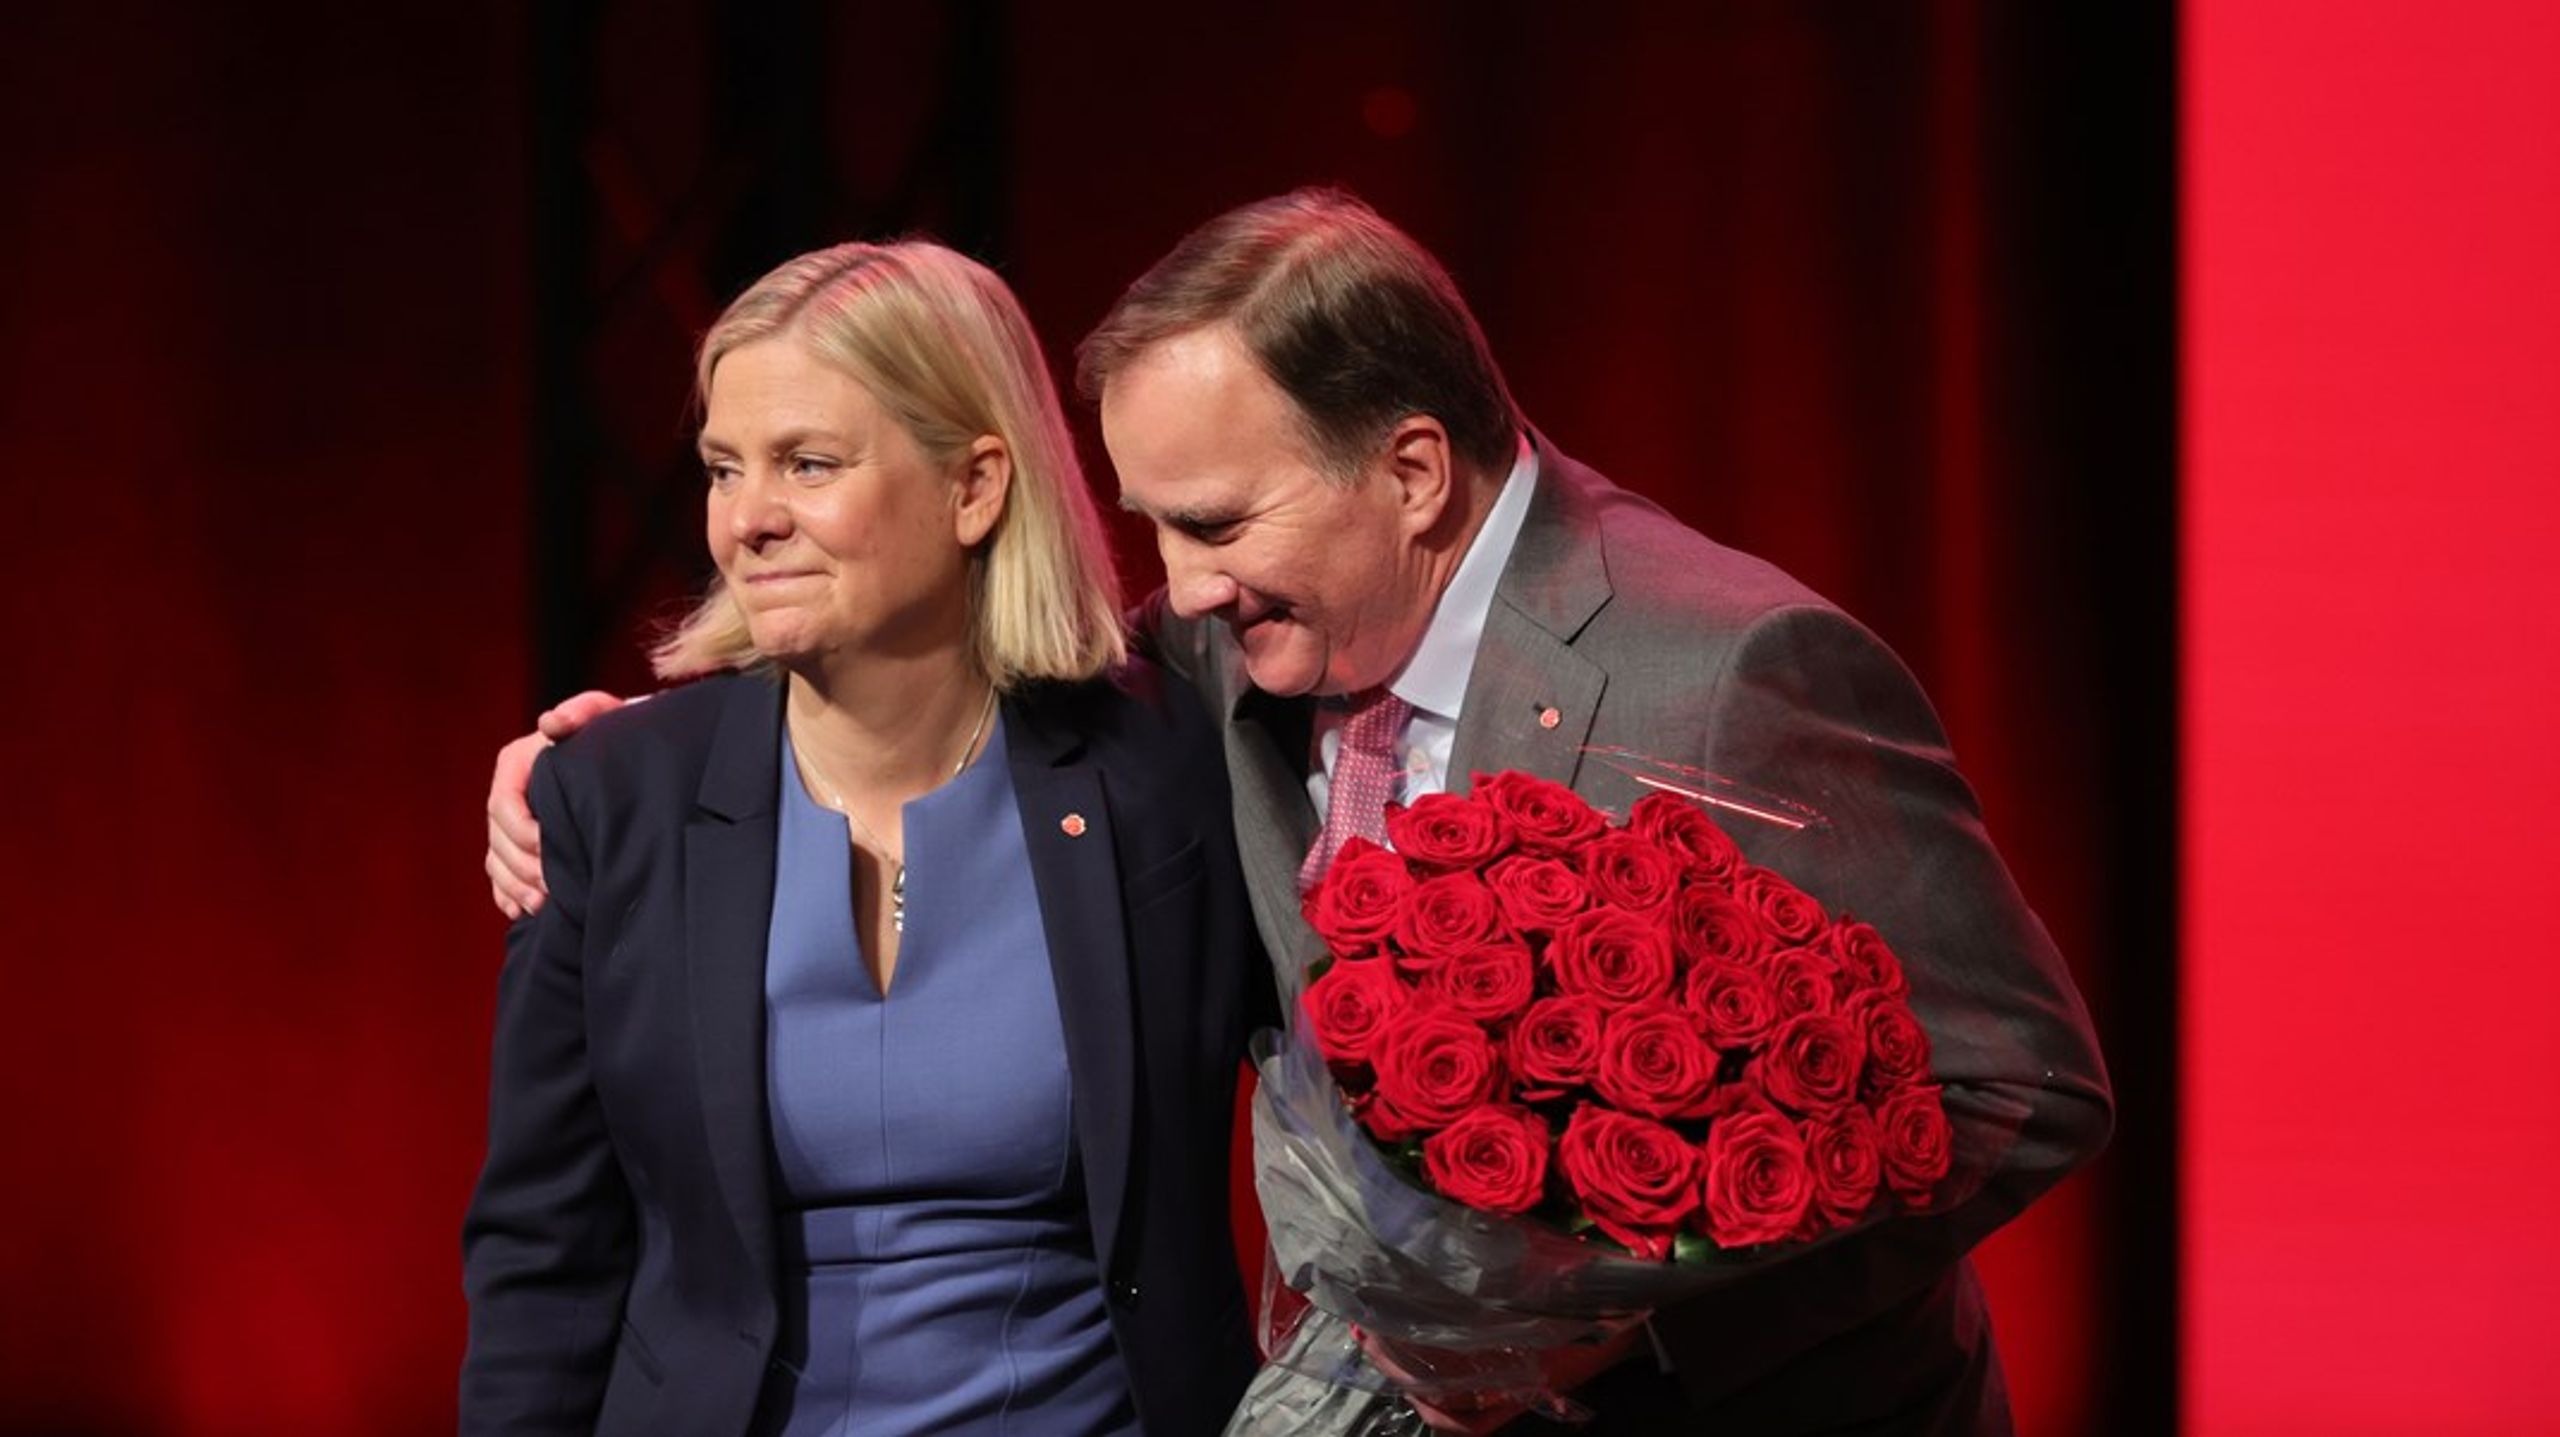 Statsminister Löfven går af og ventes&nbsp;at blive efterfulgt af finansminister, Magdalena Andersson